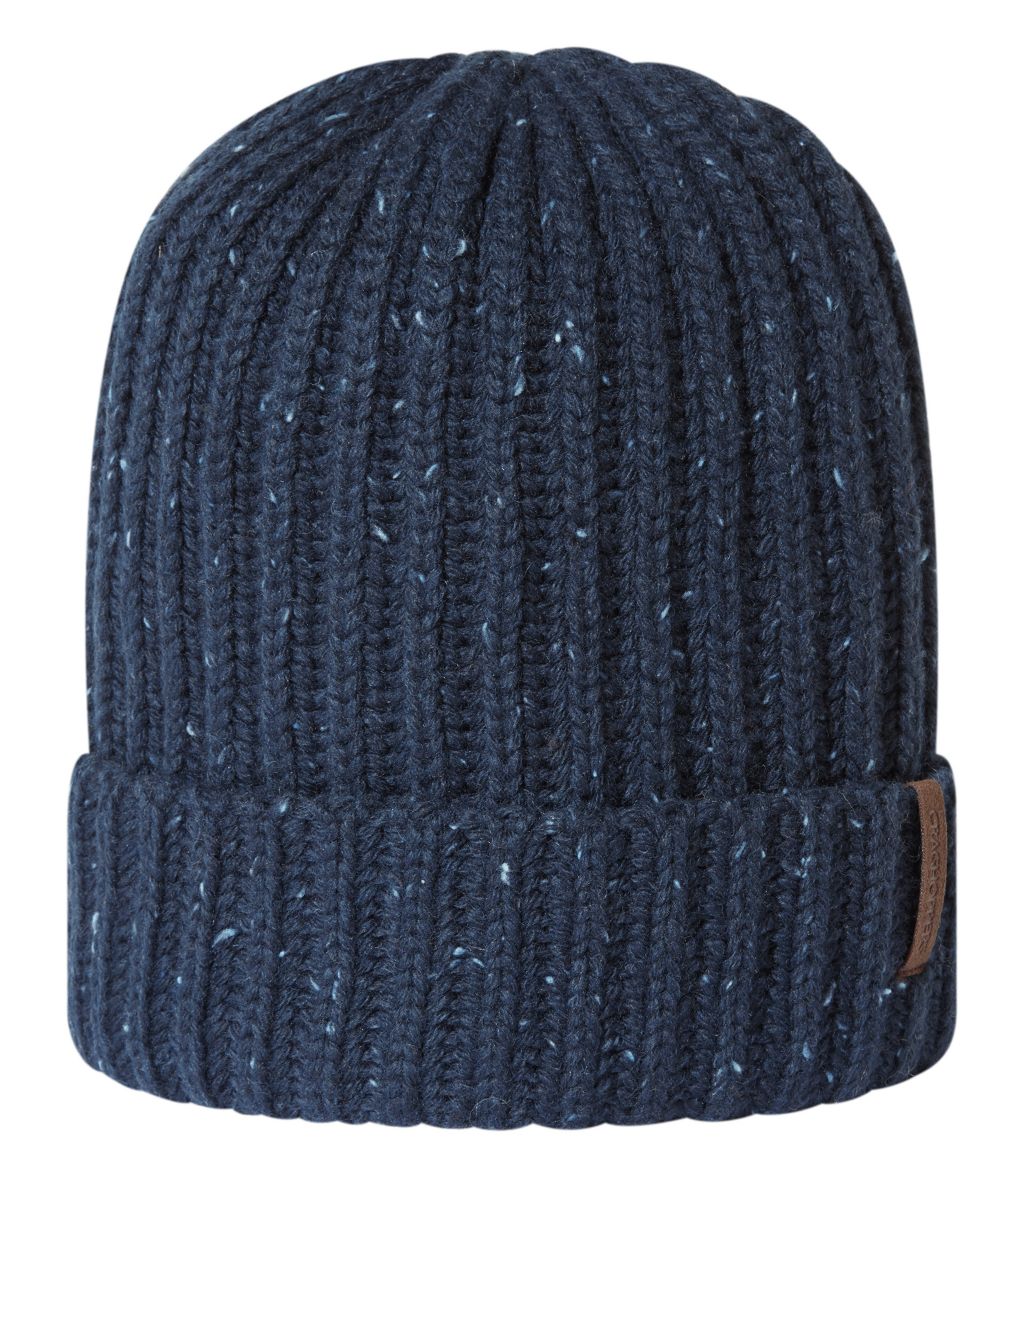 Wool Blend Textured Beanie Hat image 1